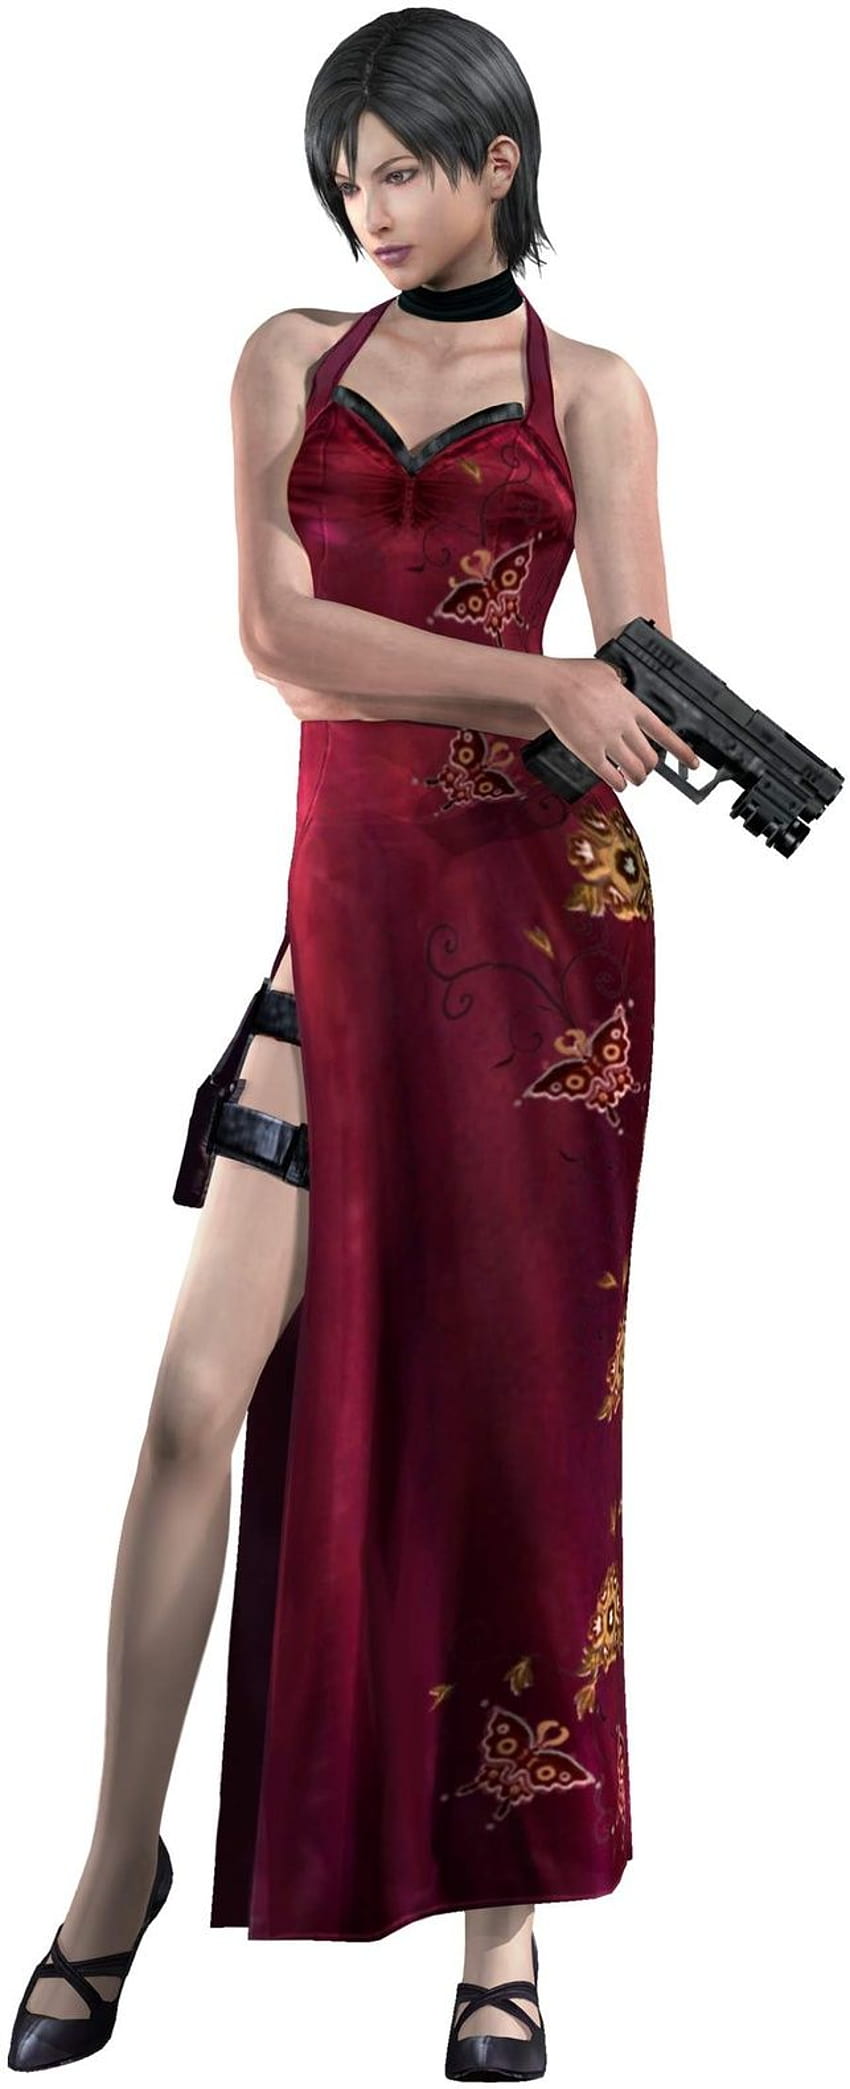 Personagens de videogame Feminino, ada wong resident evil 4 Papel de parede de celular HD